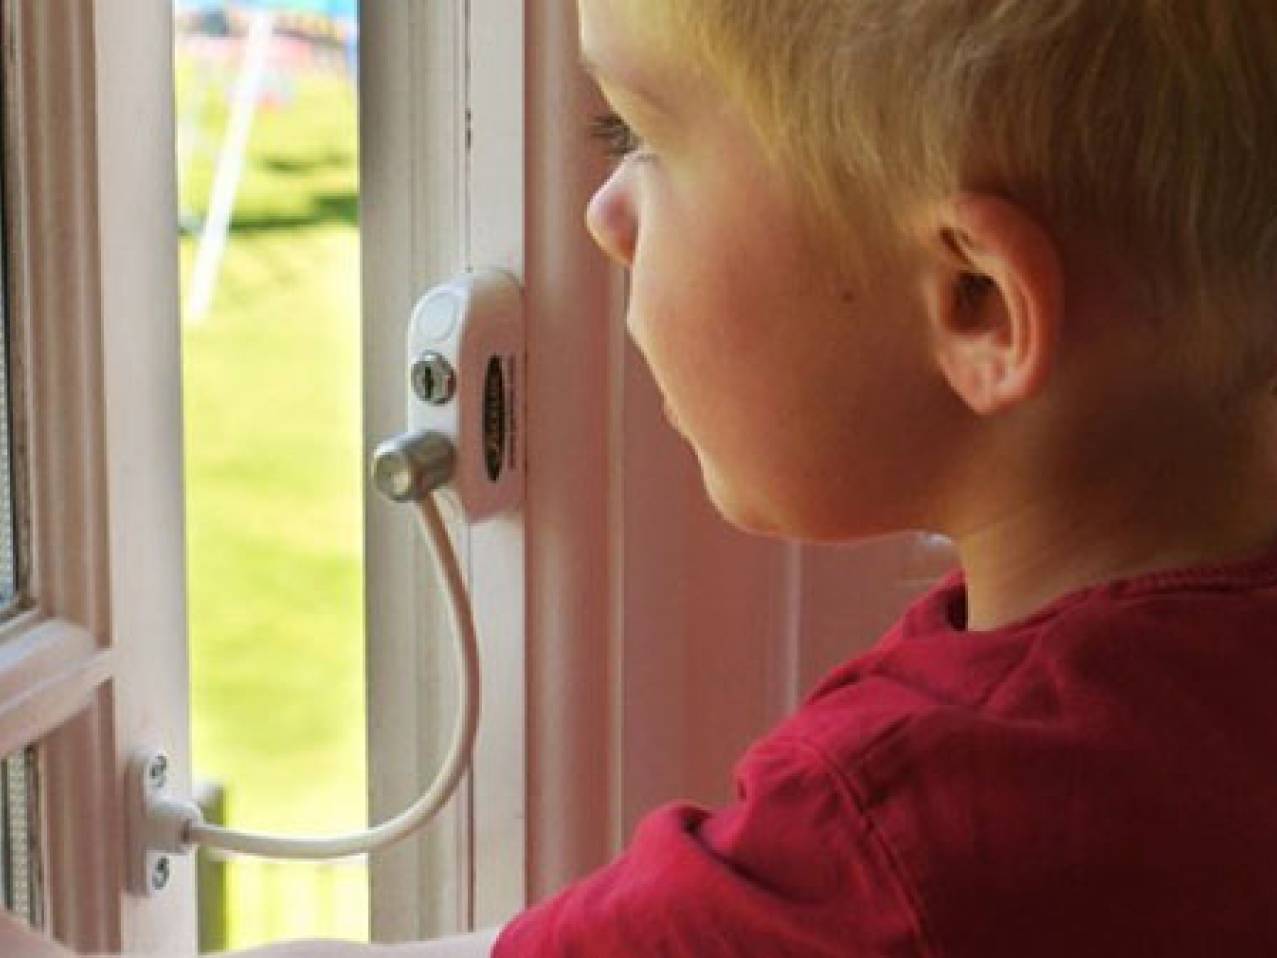 Виды защиты на пластиковые окна для безопасности ребенка: замки, защелки, ручки с крючком и блокиратор